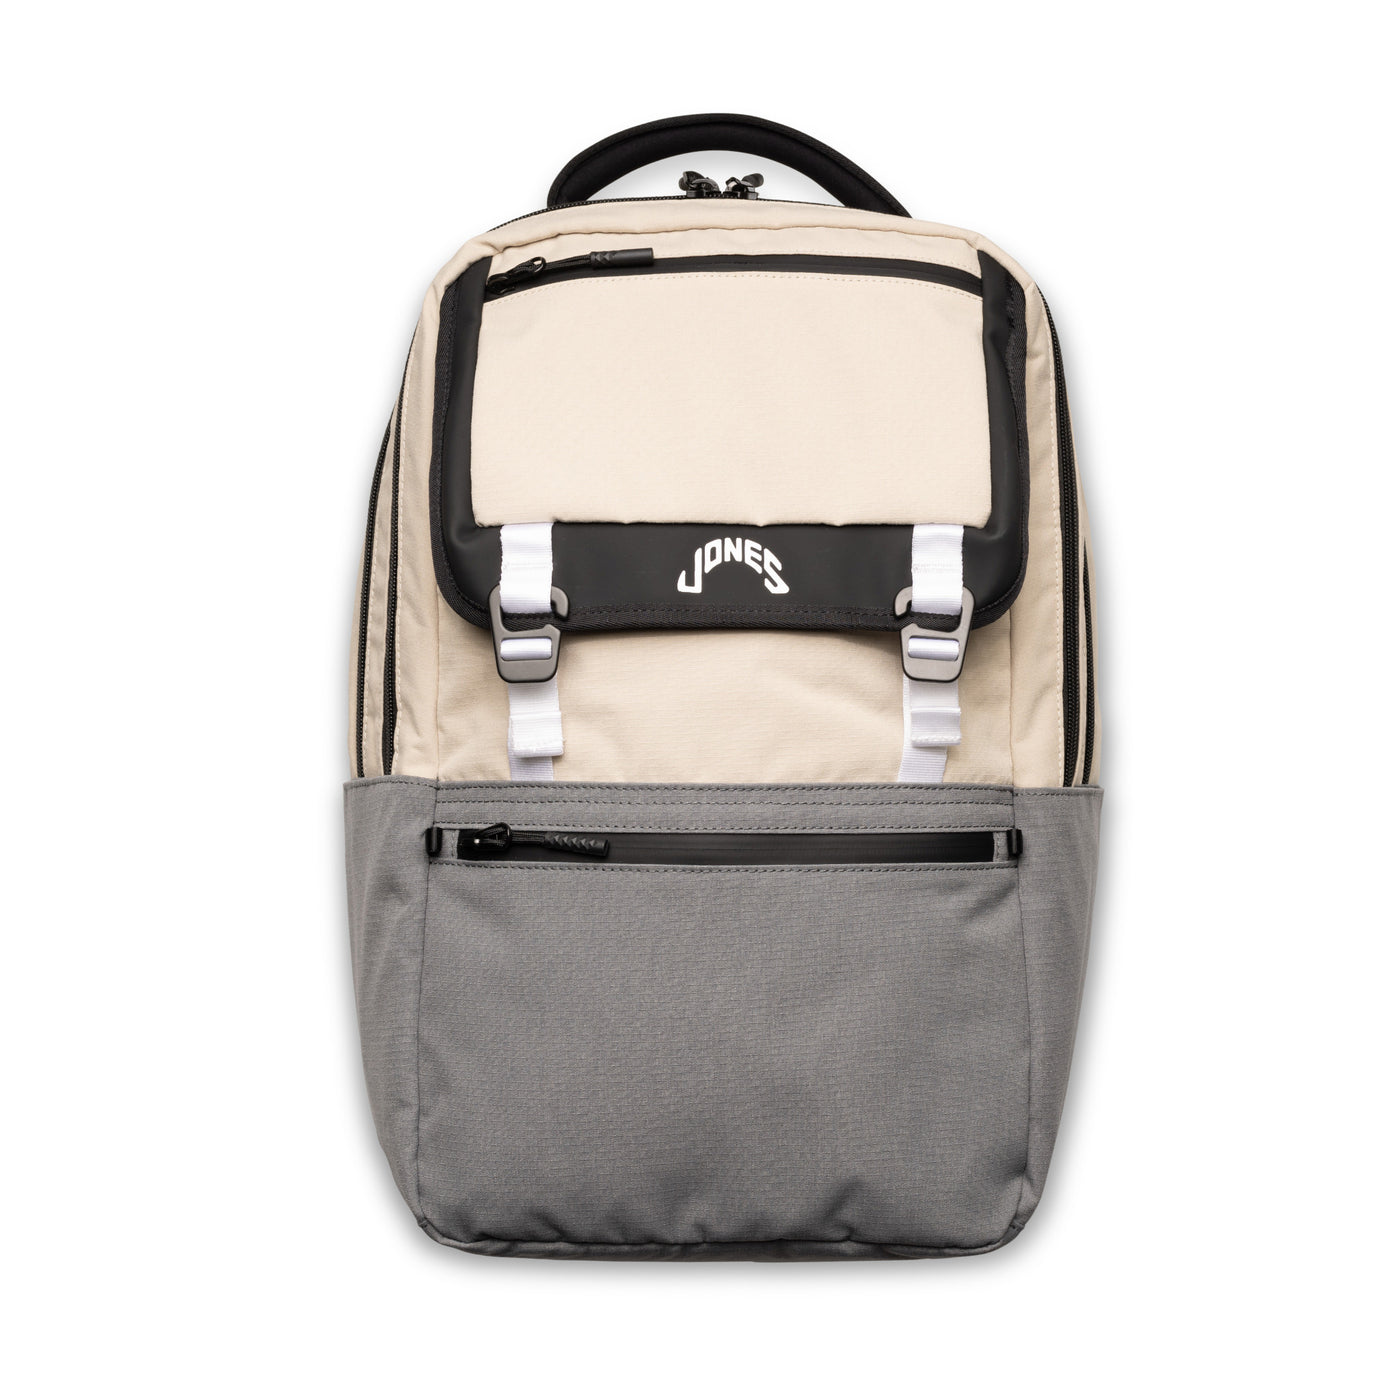 A2 Backpack - Field Khaki/Charcoal